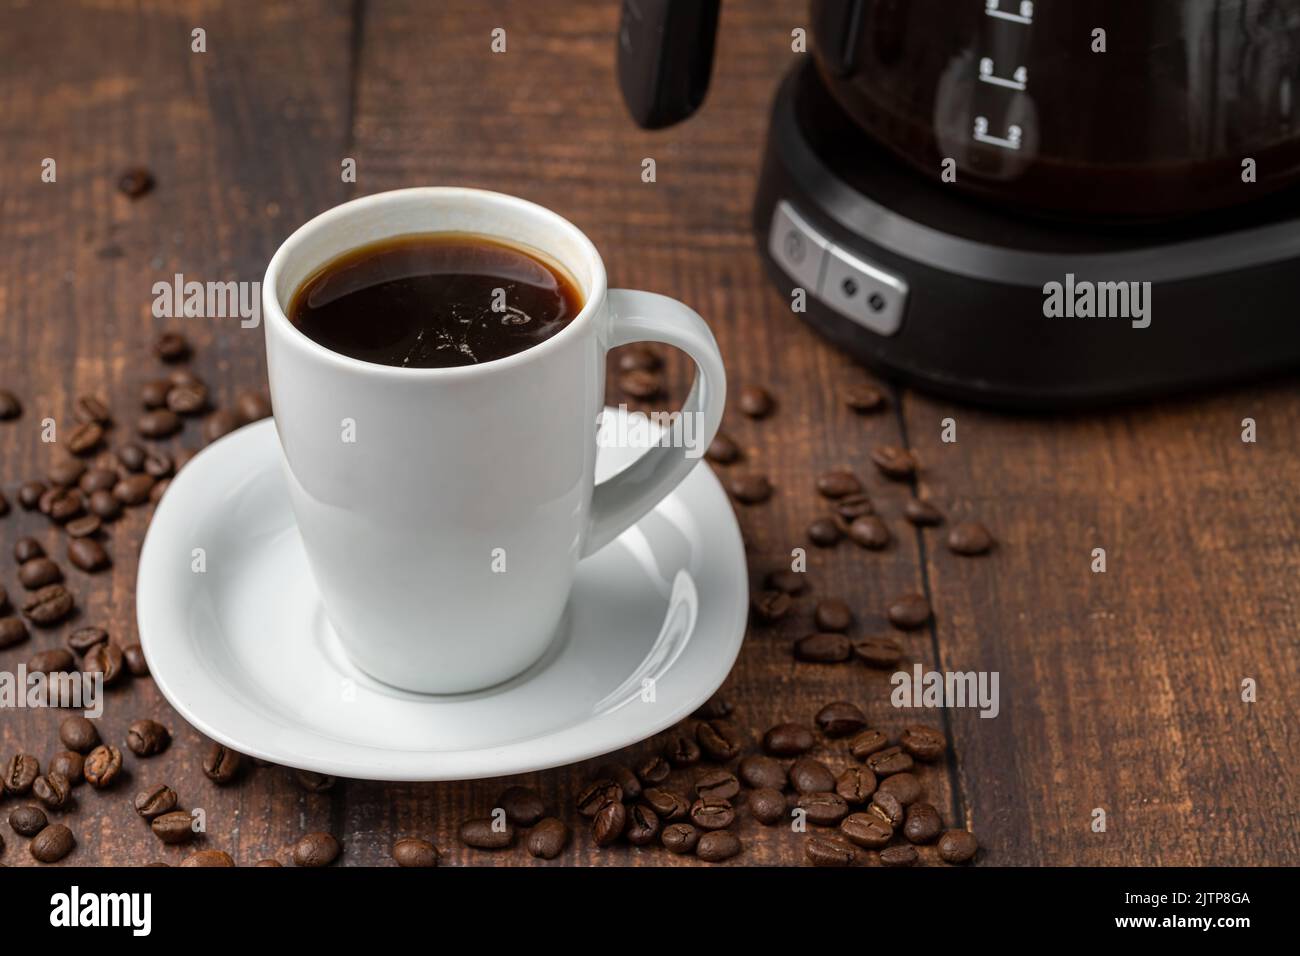 Filterkaffee, der in einer Filterkaffeemaschine in einer weißen Porzellanschale gebrüht wird Stockfoto